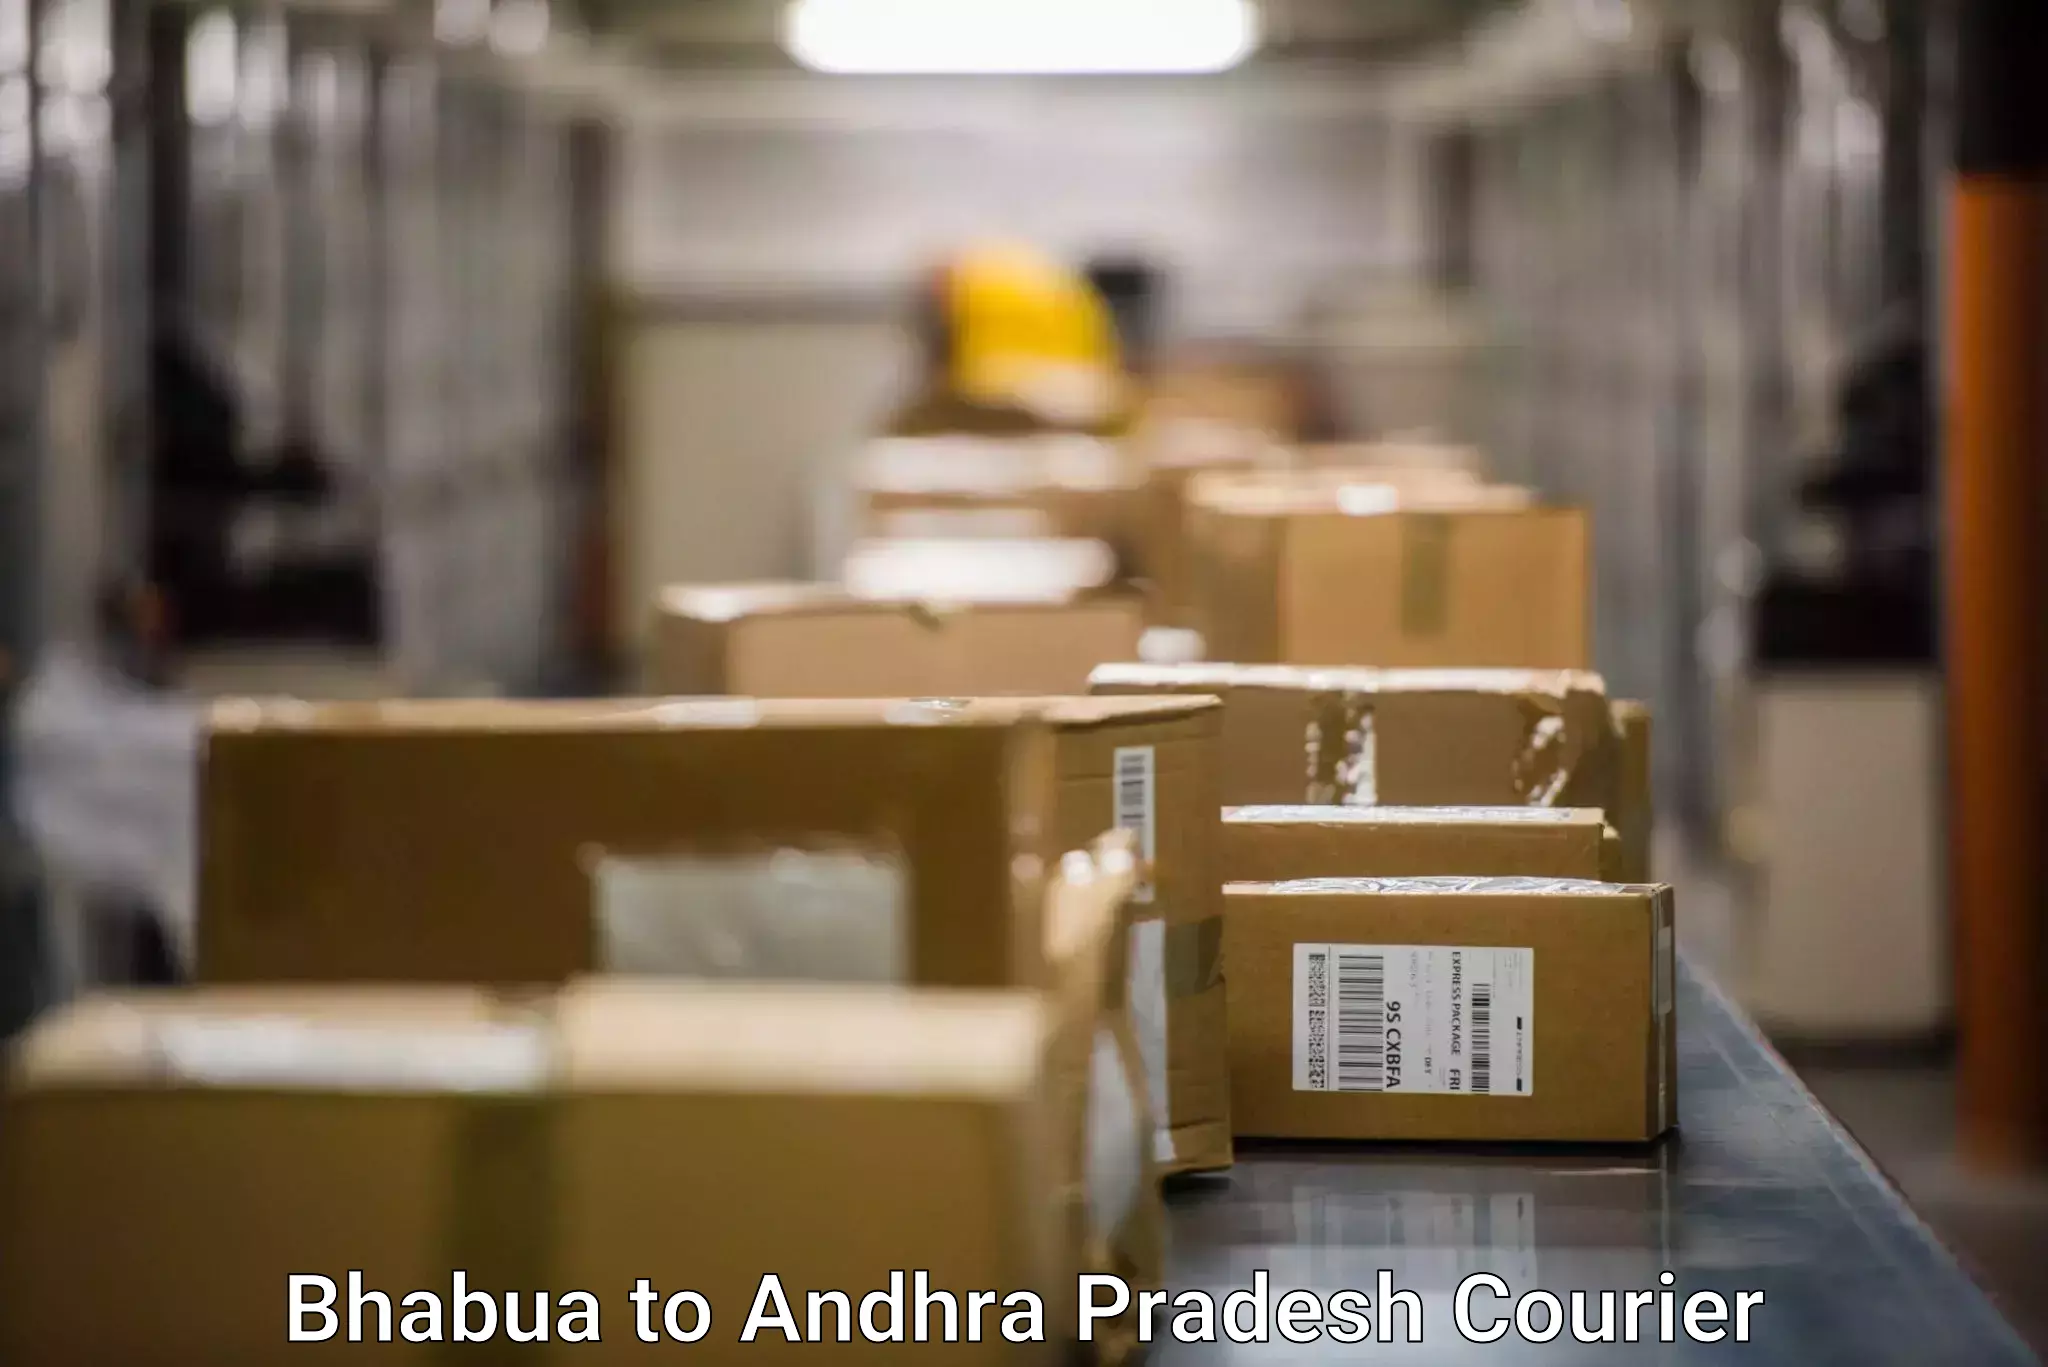 24-hour courier services Bhabua to Amalapuram